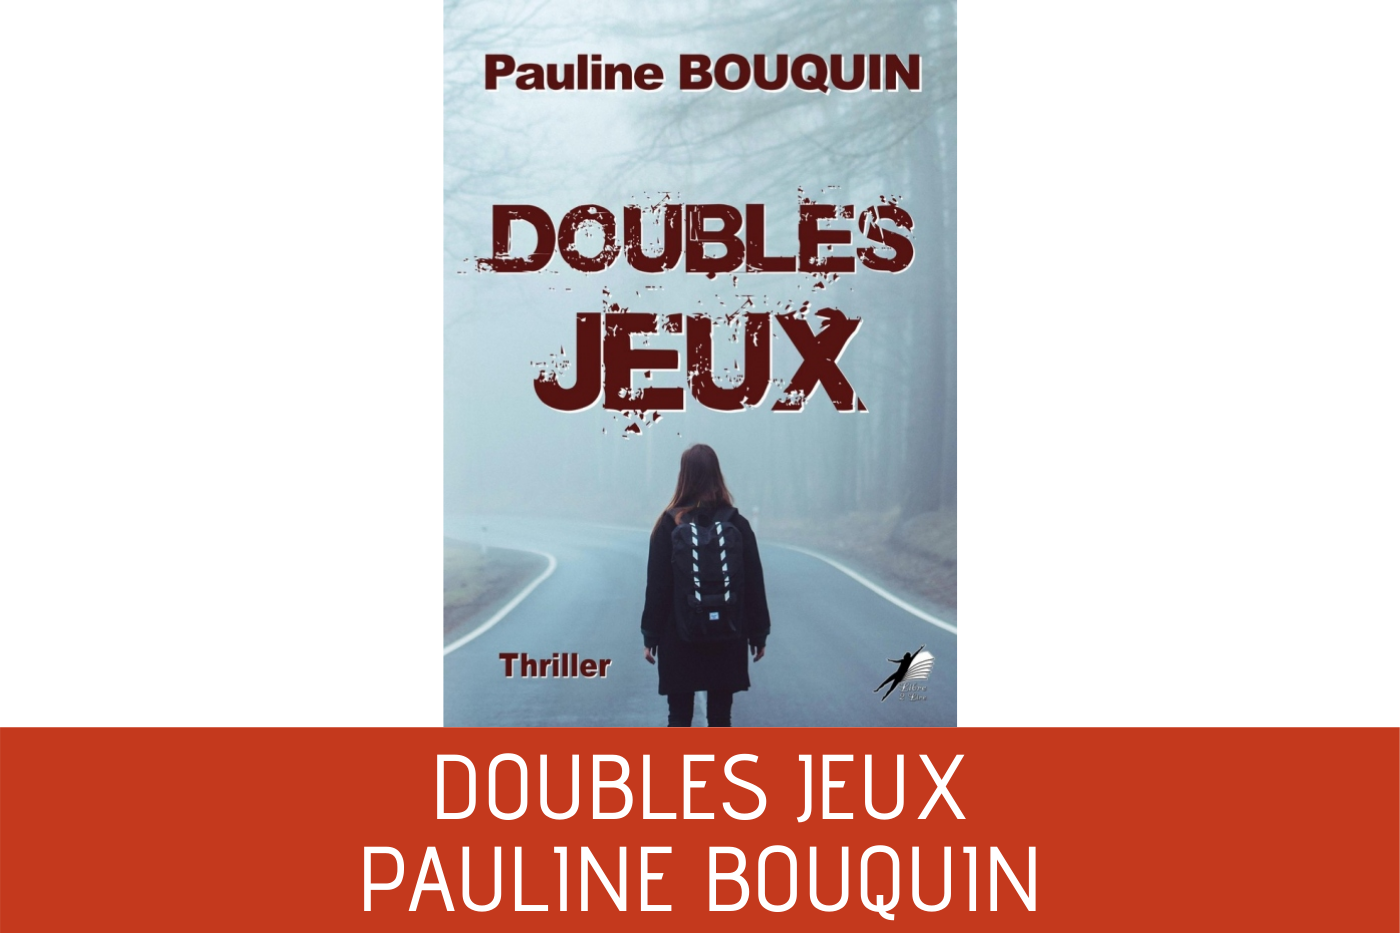 [Chronique] Doubles jeux, un thriller court de Pauline Bouquin